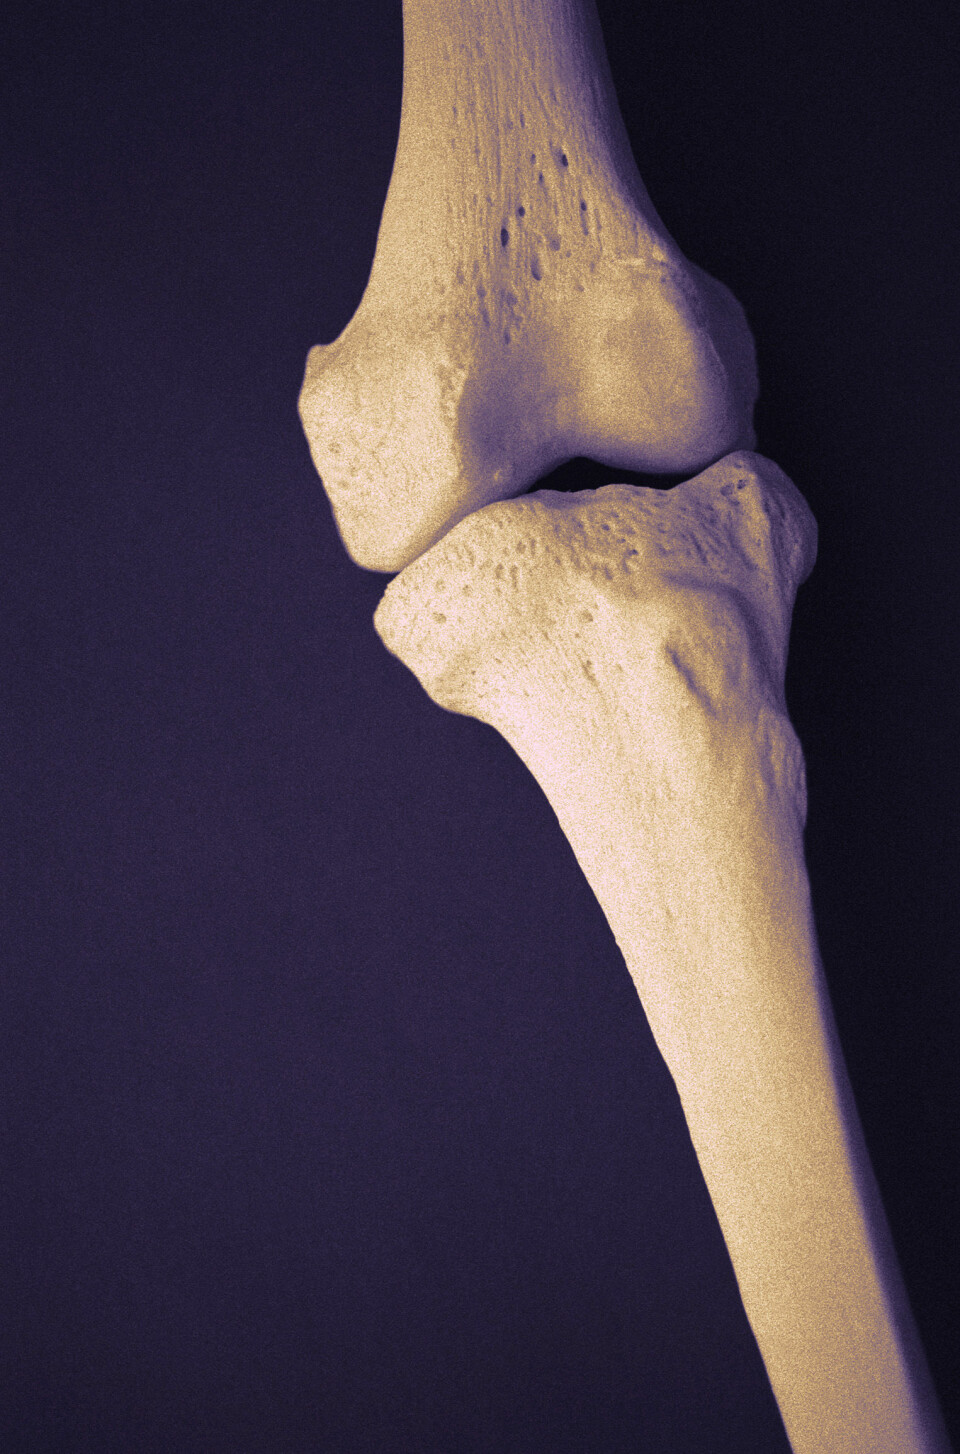 'Hver tredje kvinne i Norge over 50 år utvikler osteoporose (beinskjørhet). Menn har i utgangspunktet kraftigere beinstruktur og blir ikke rammet av osteoporose i like stor grad som kvinner. Illustrasjonsfoto.'